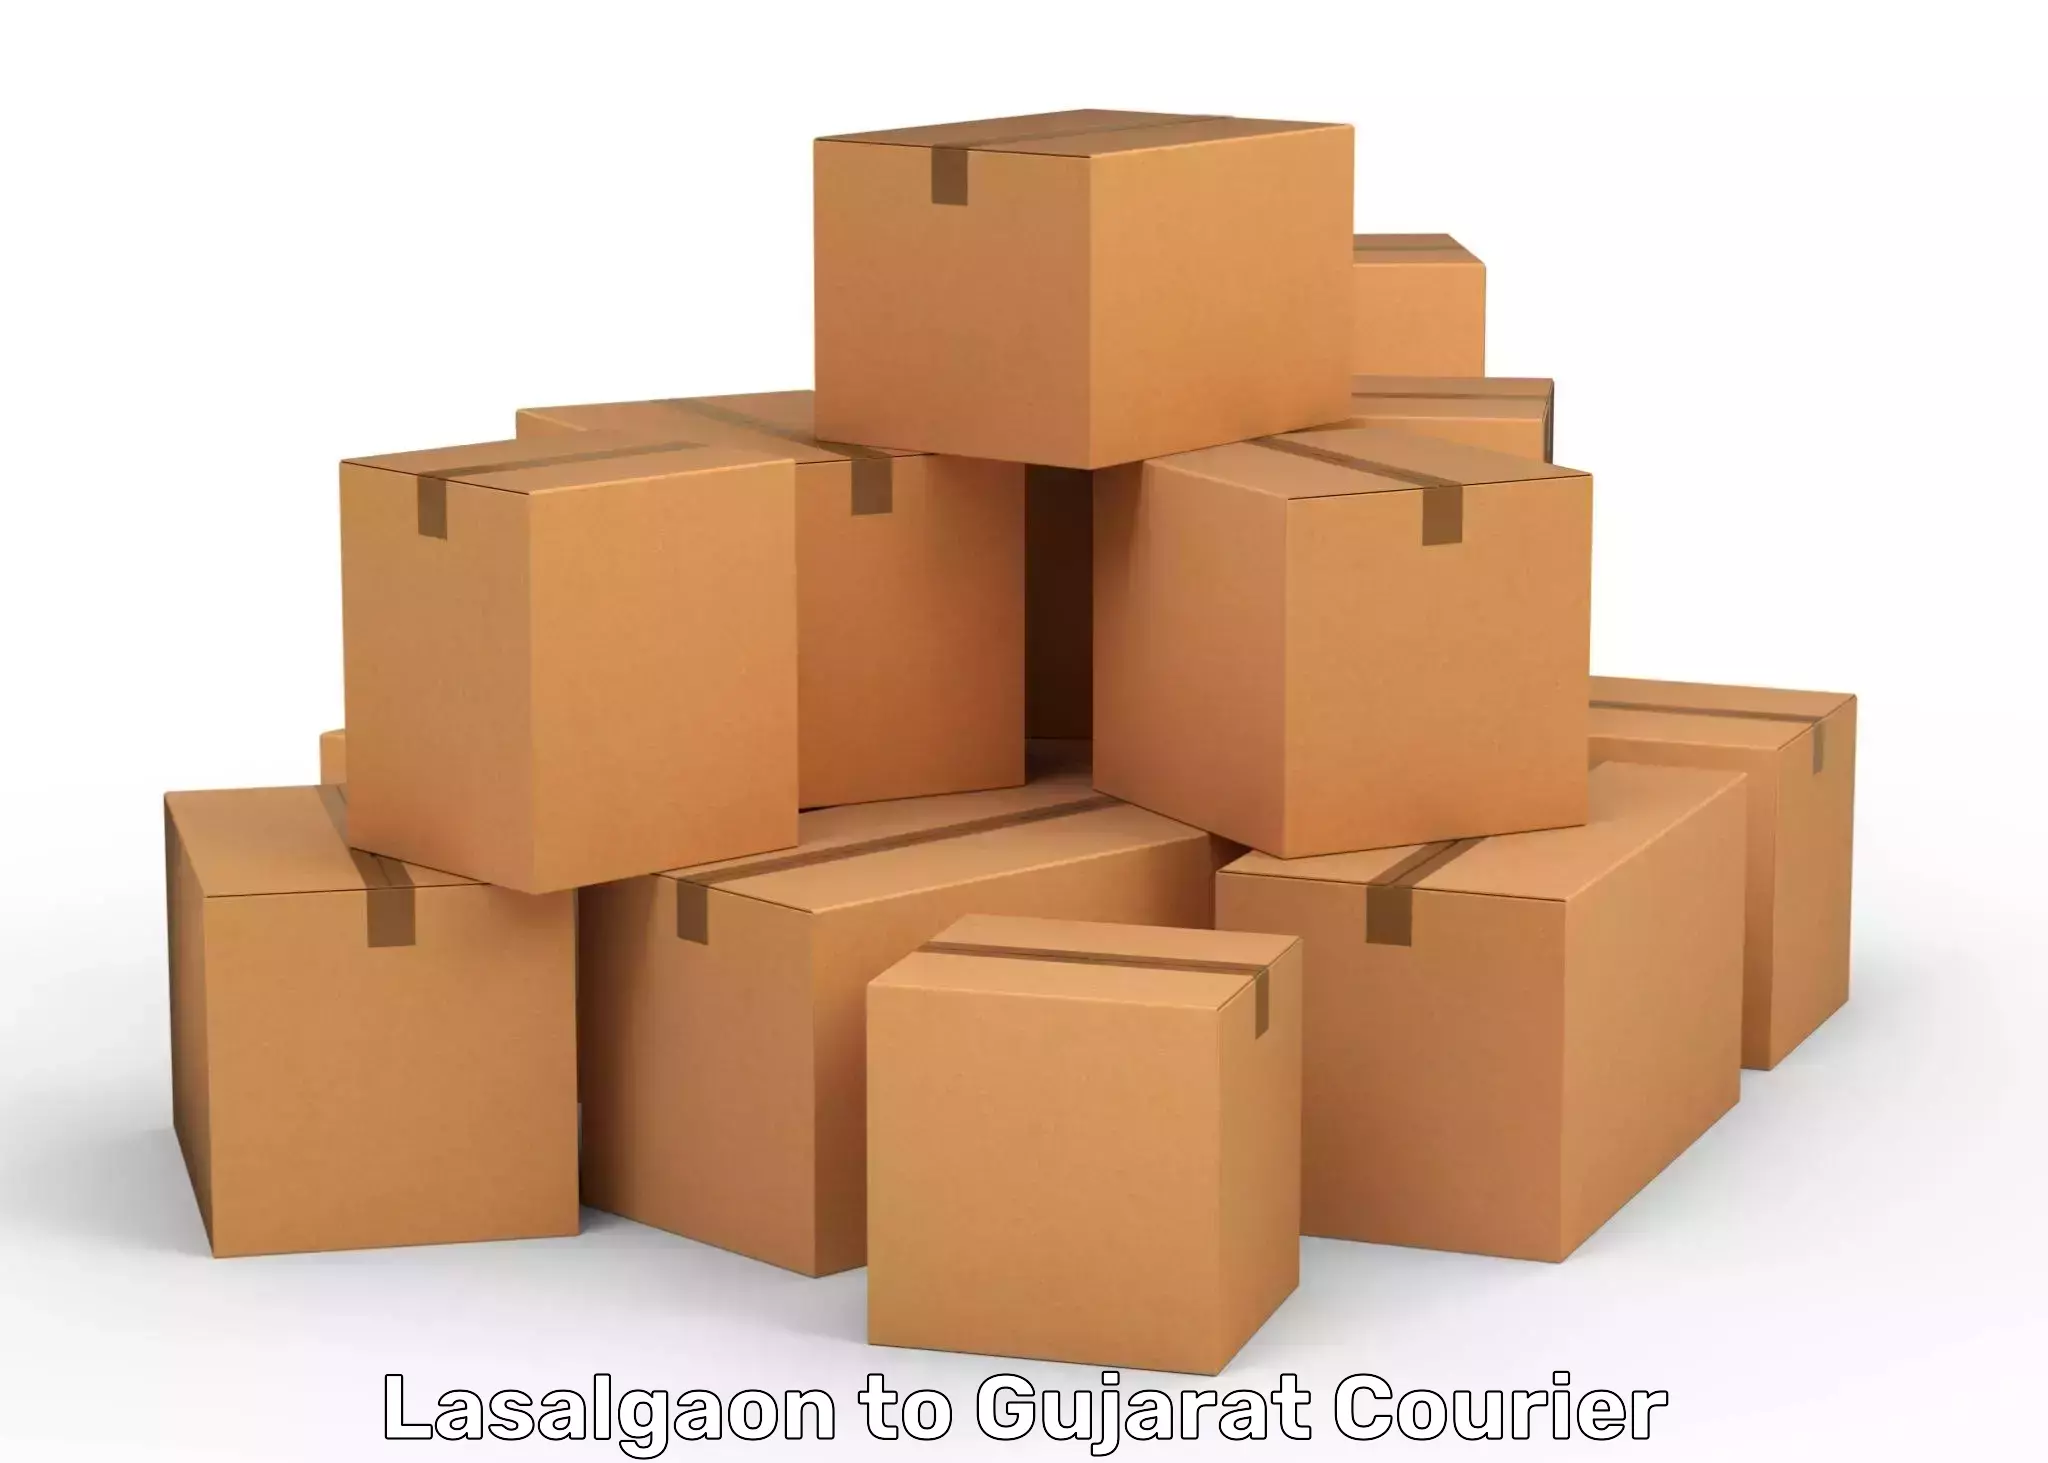 High-priority parcel service Lasalgaon to Gujarat